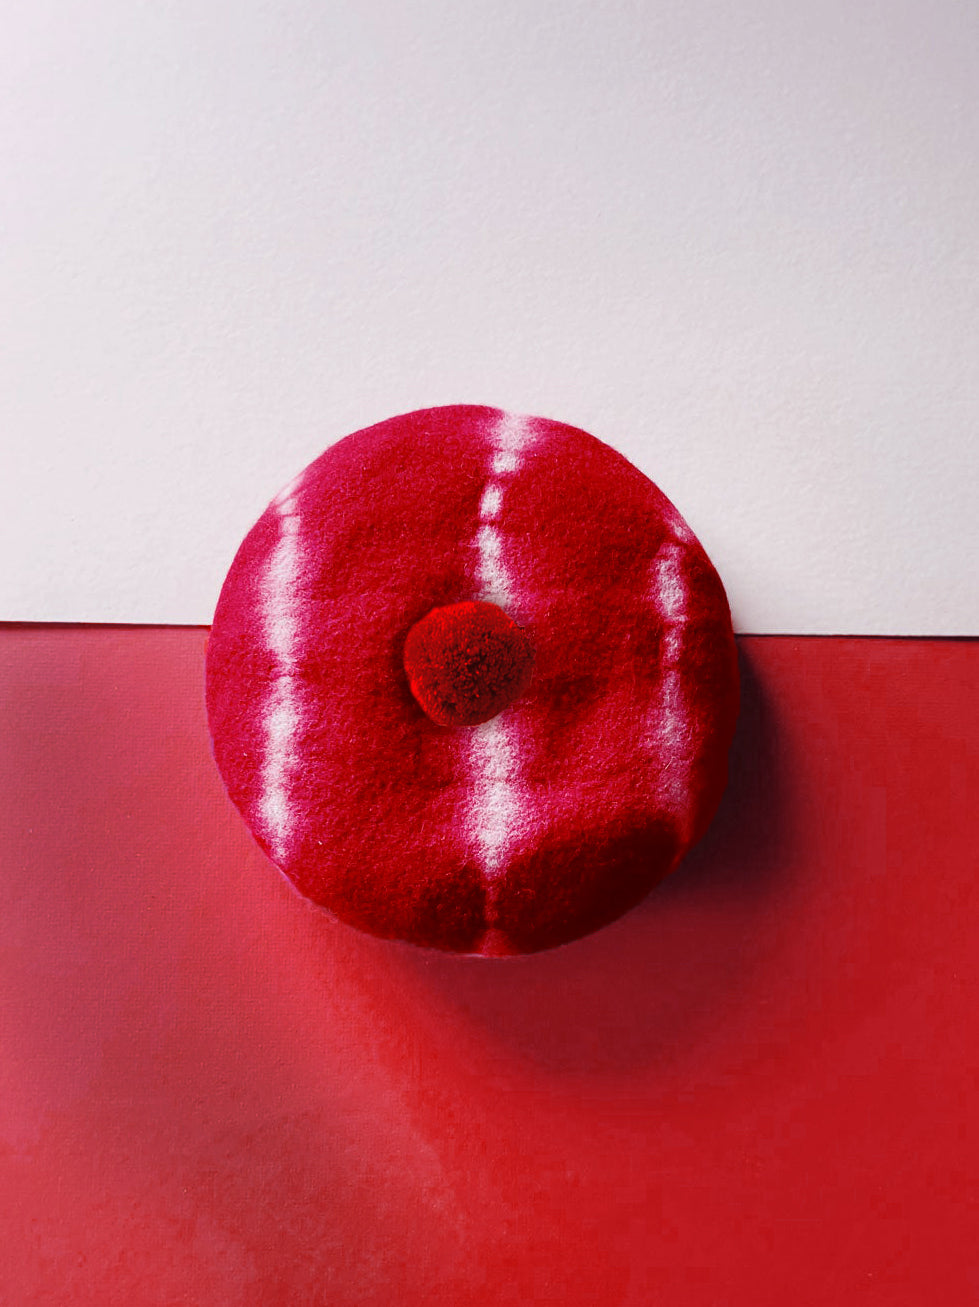 Beret Hat - Shibori Tie Dye Wine Red with Wine Red Pom Pom